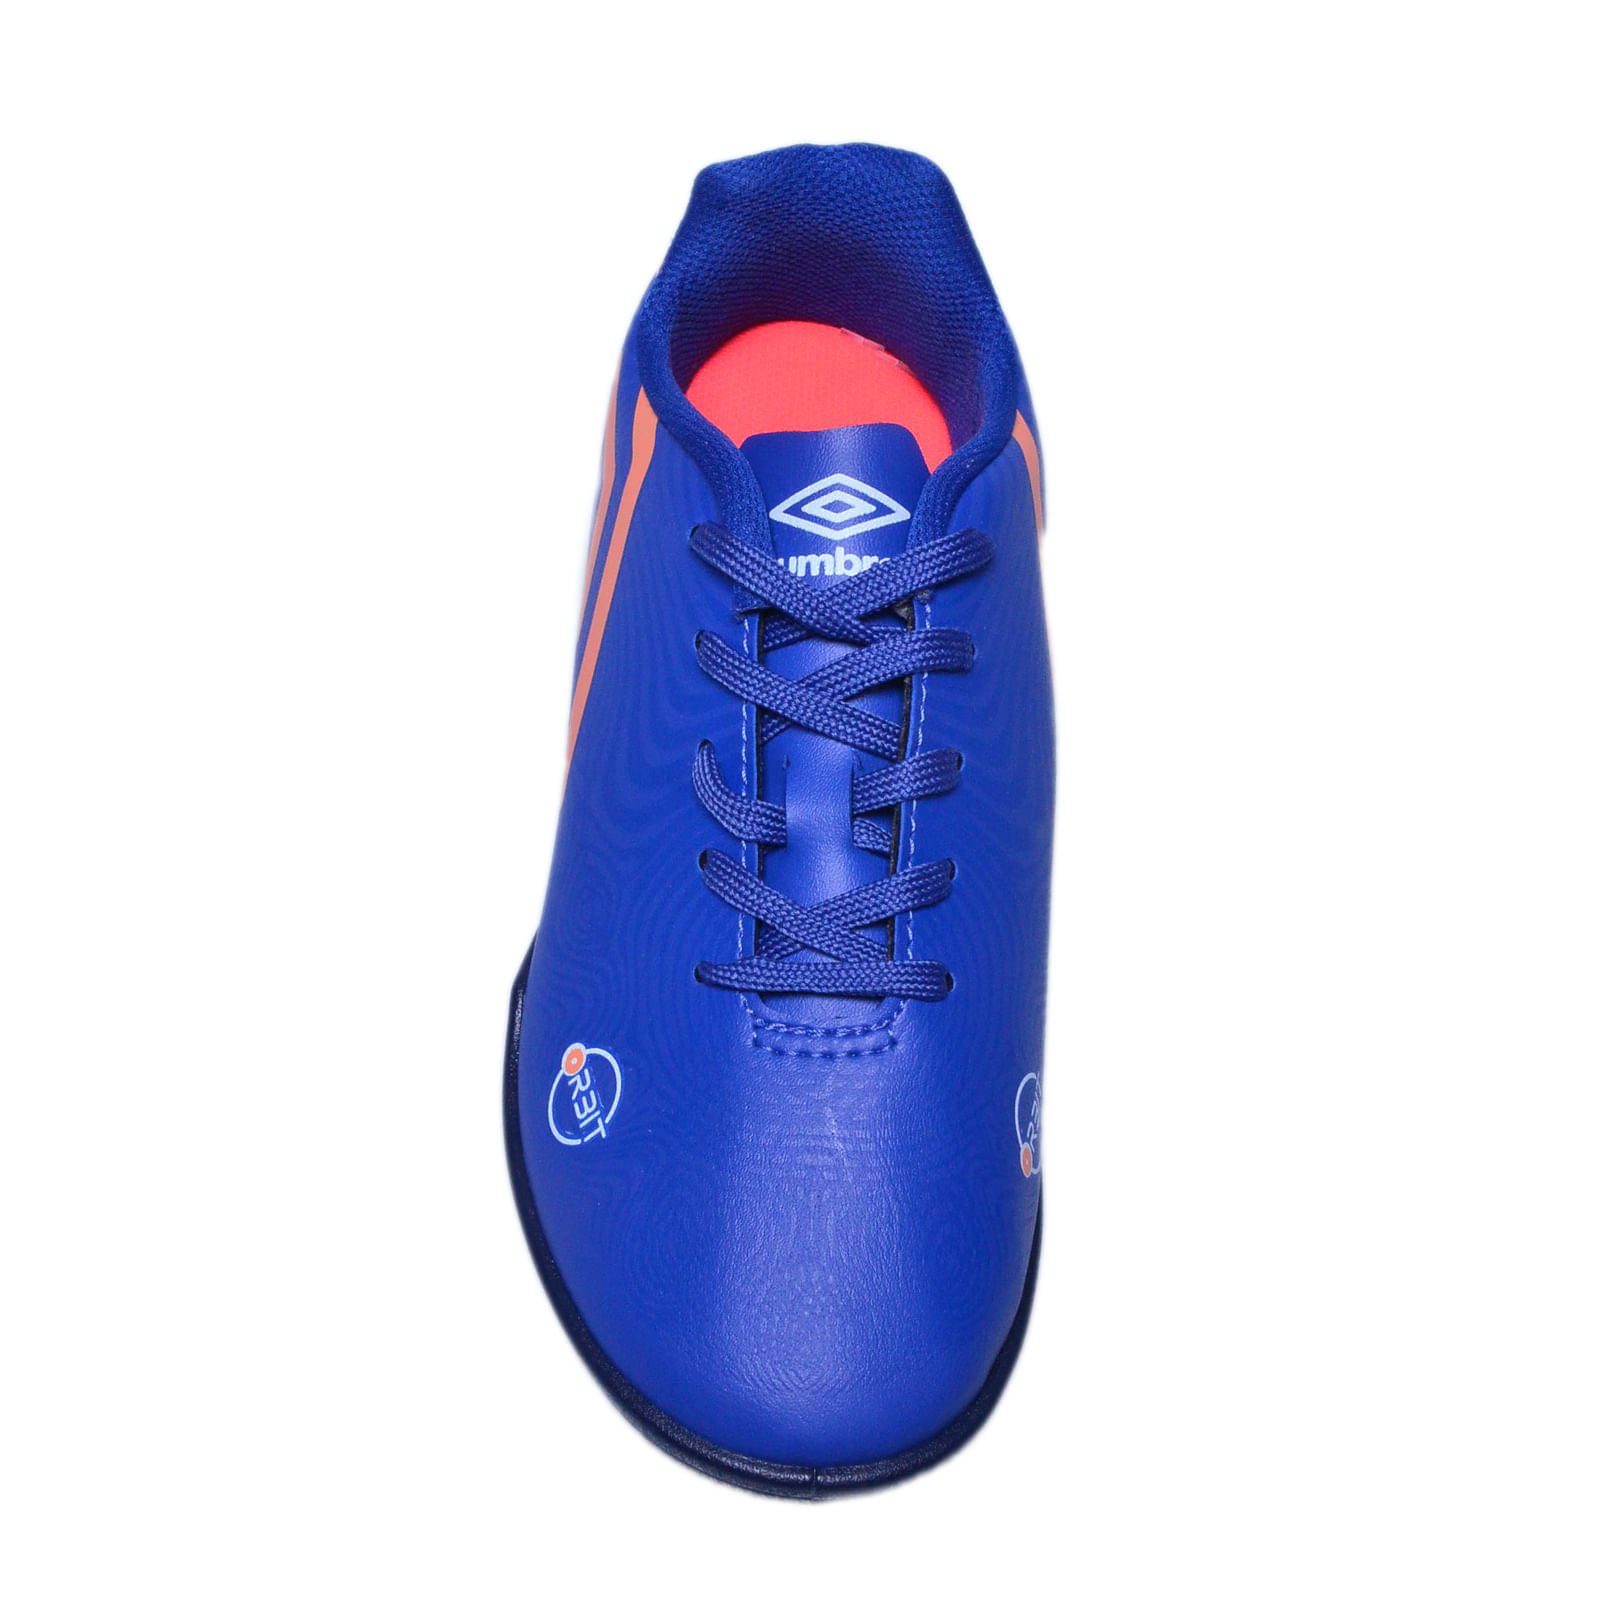 Chuteira para jogar Futsal X-Comfort Azul Marinho - Umbro